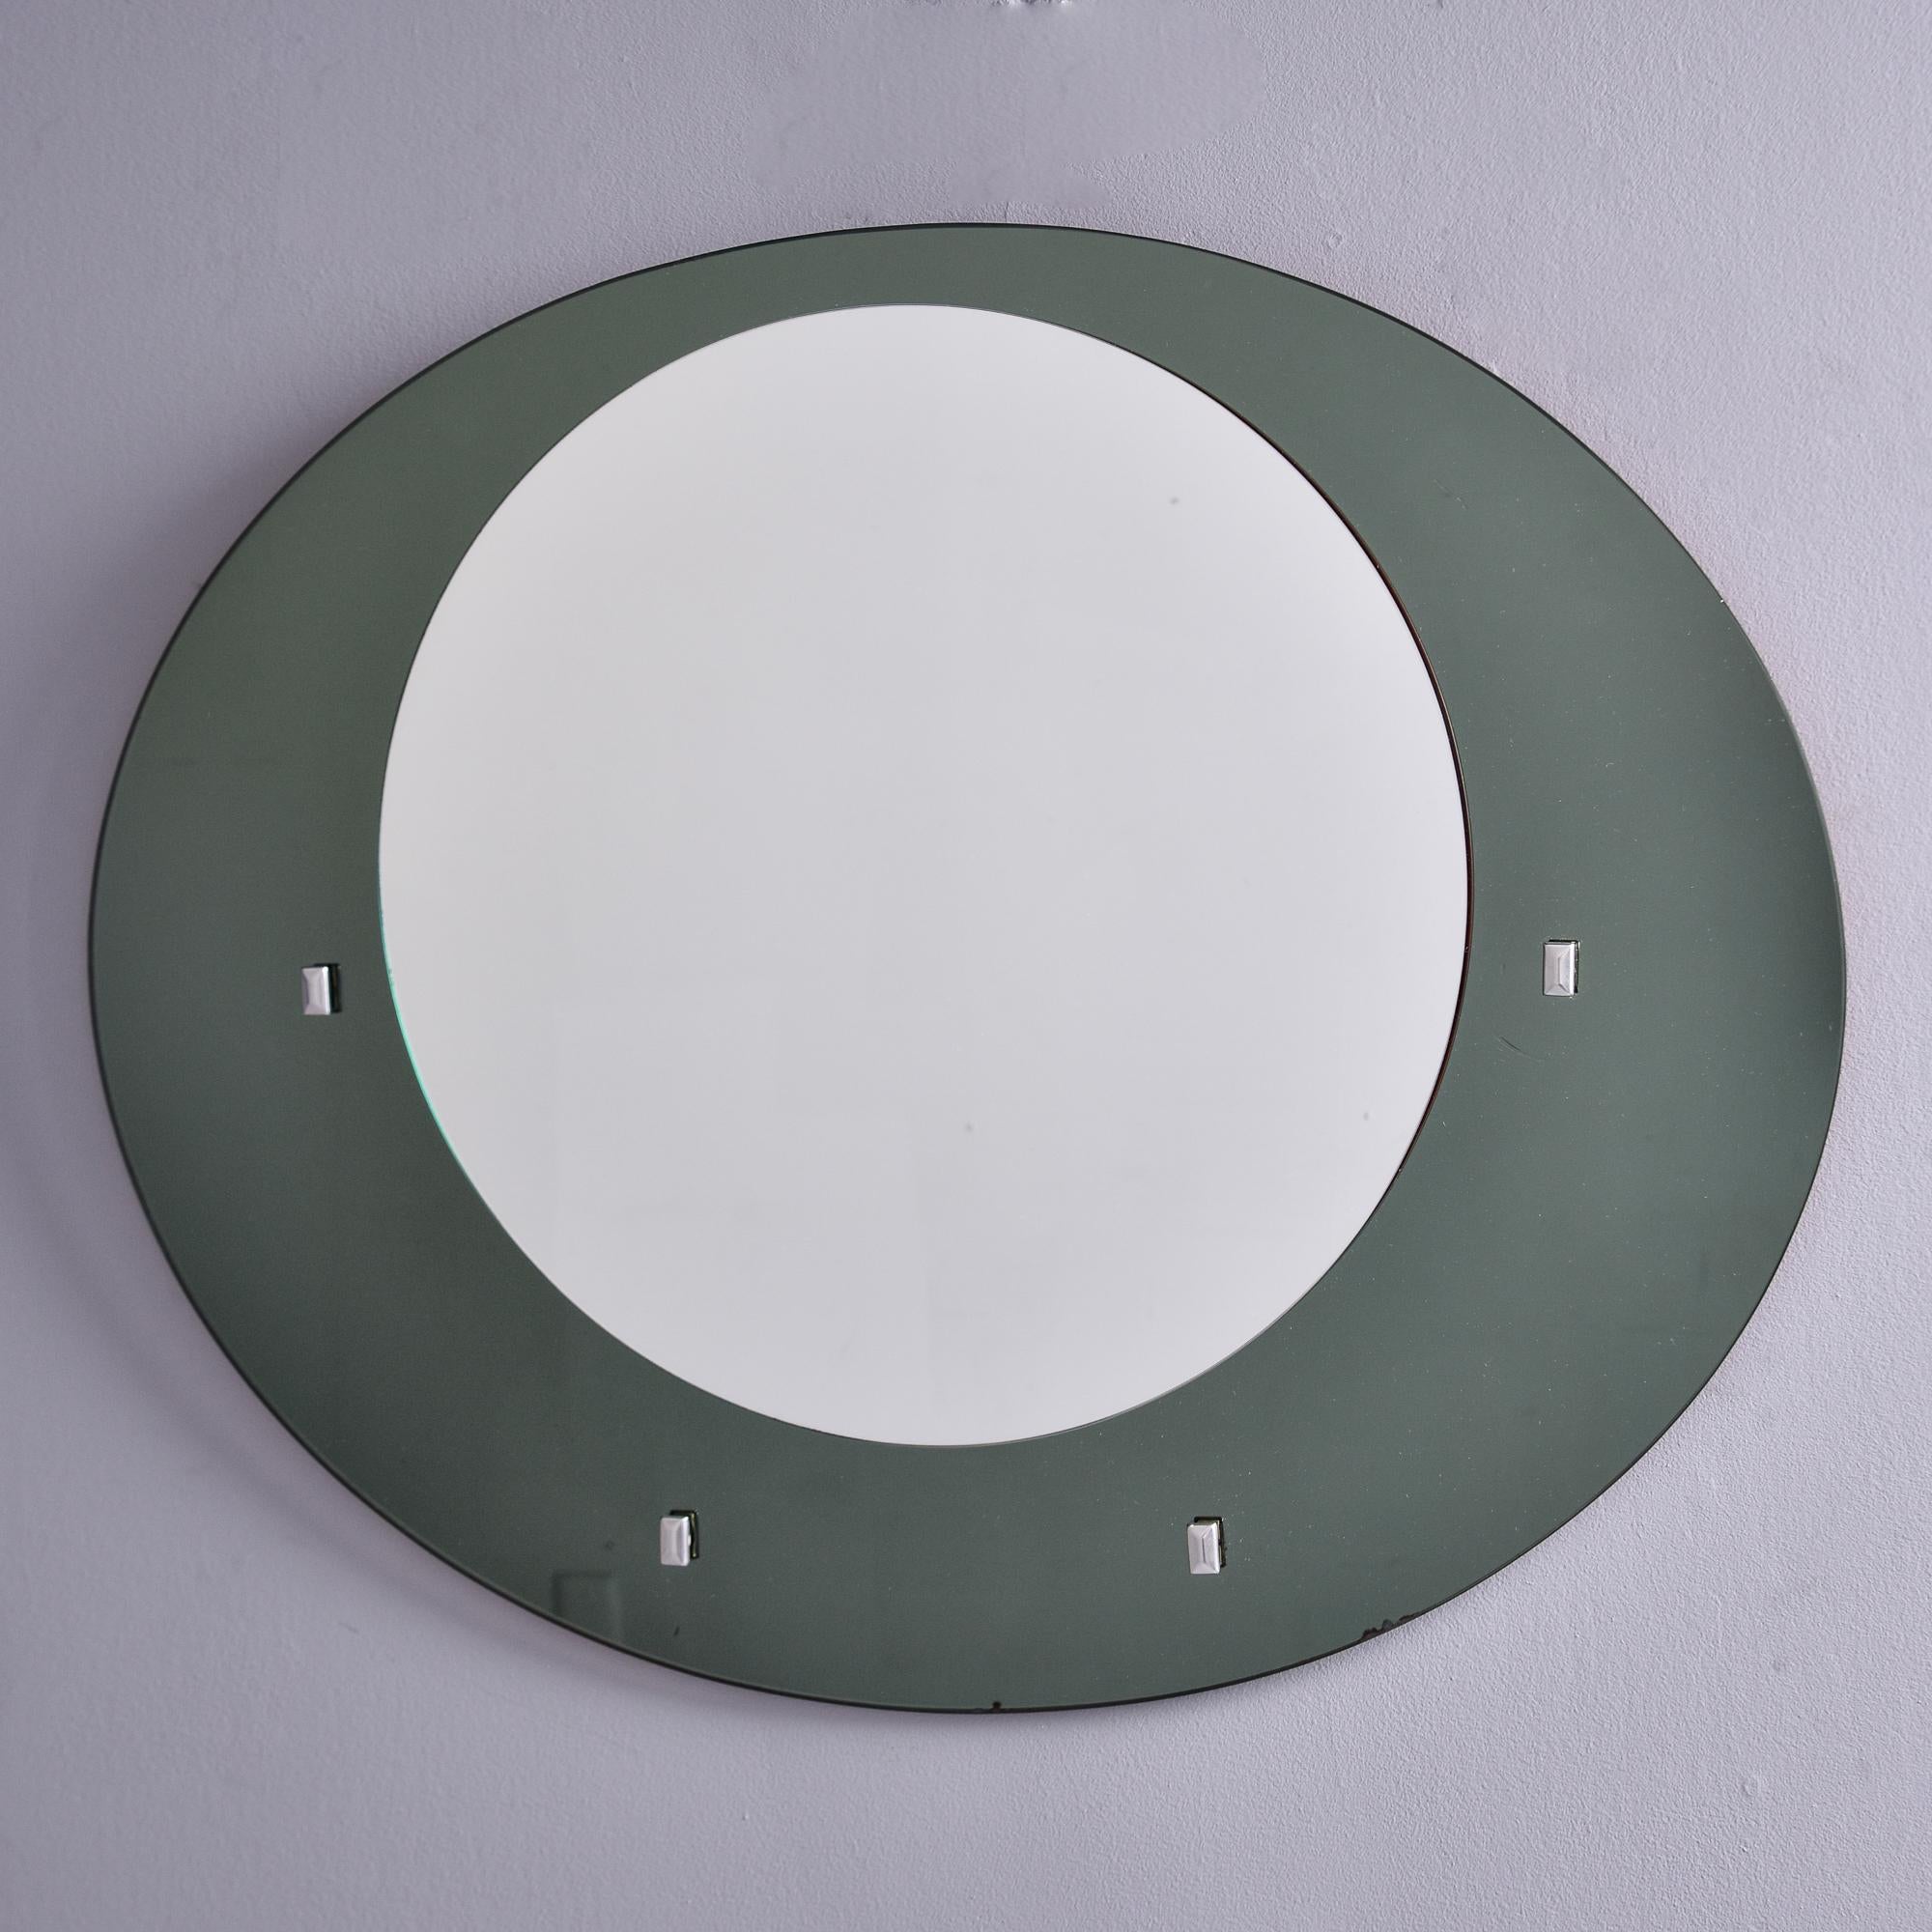 Dieser runde Spiegel mit grauem Glasrahmen wurde in Italien gefunden und stammt aus den späten 1960er Jahren. Der runde Spiegel ist außermittig auf einem ovalen Rahmen aus grauem Glas angebracht. Rechteckige silberfarbene Metallakzente. Metallbügel